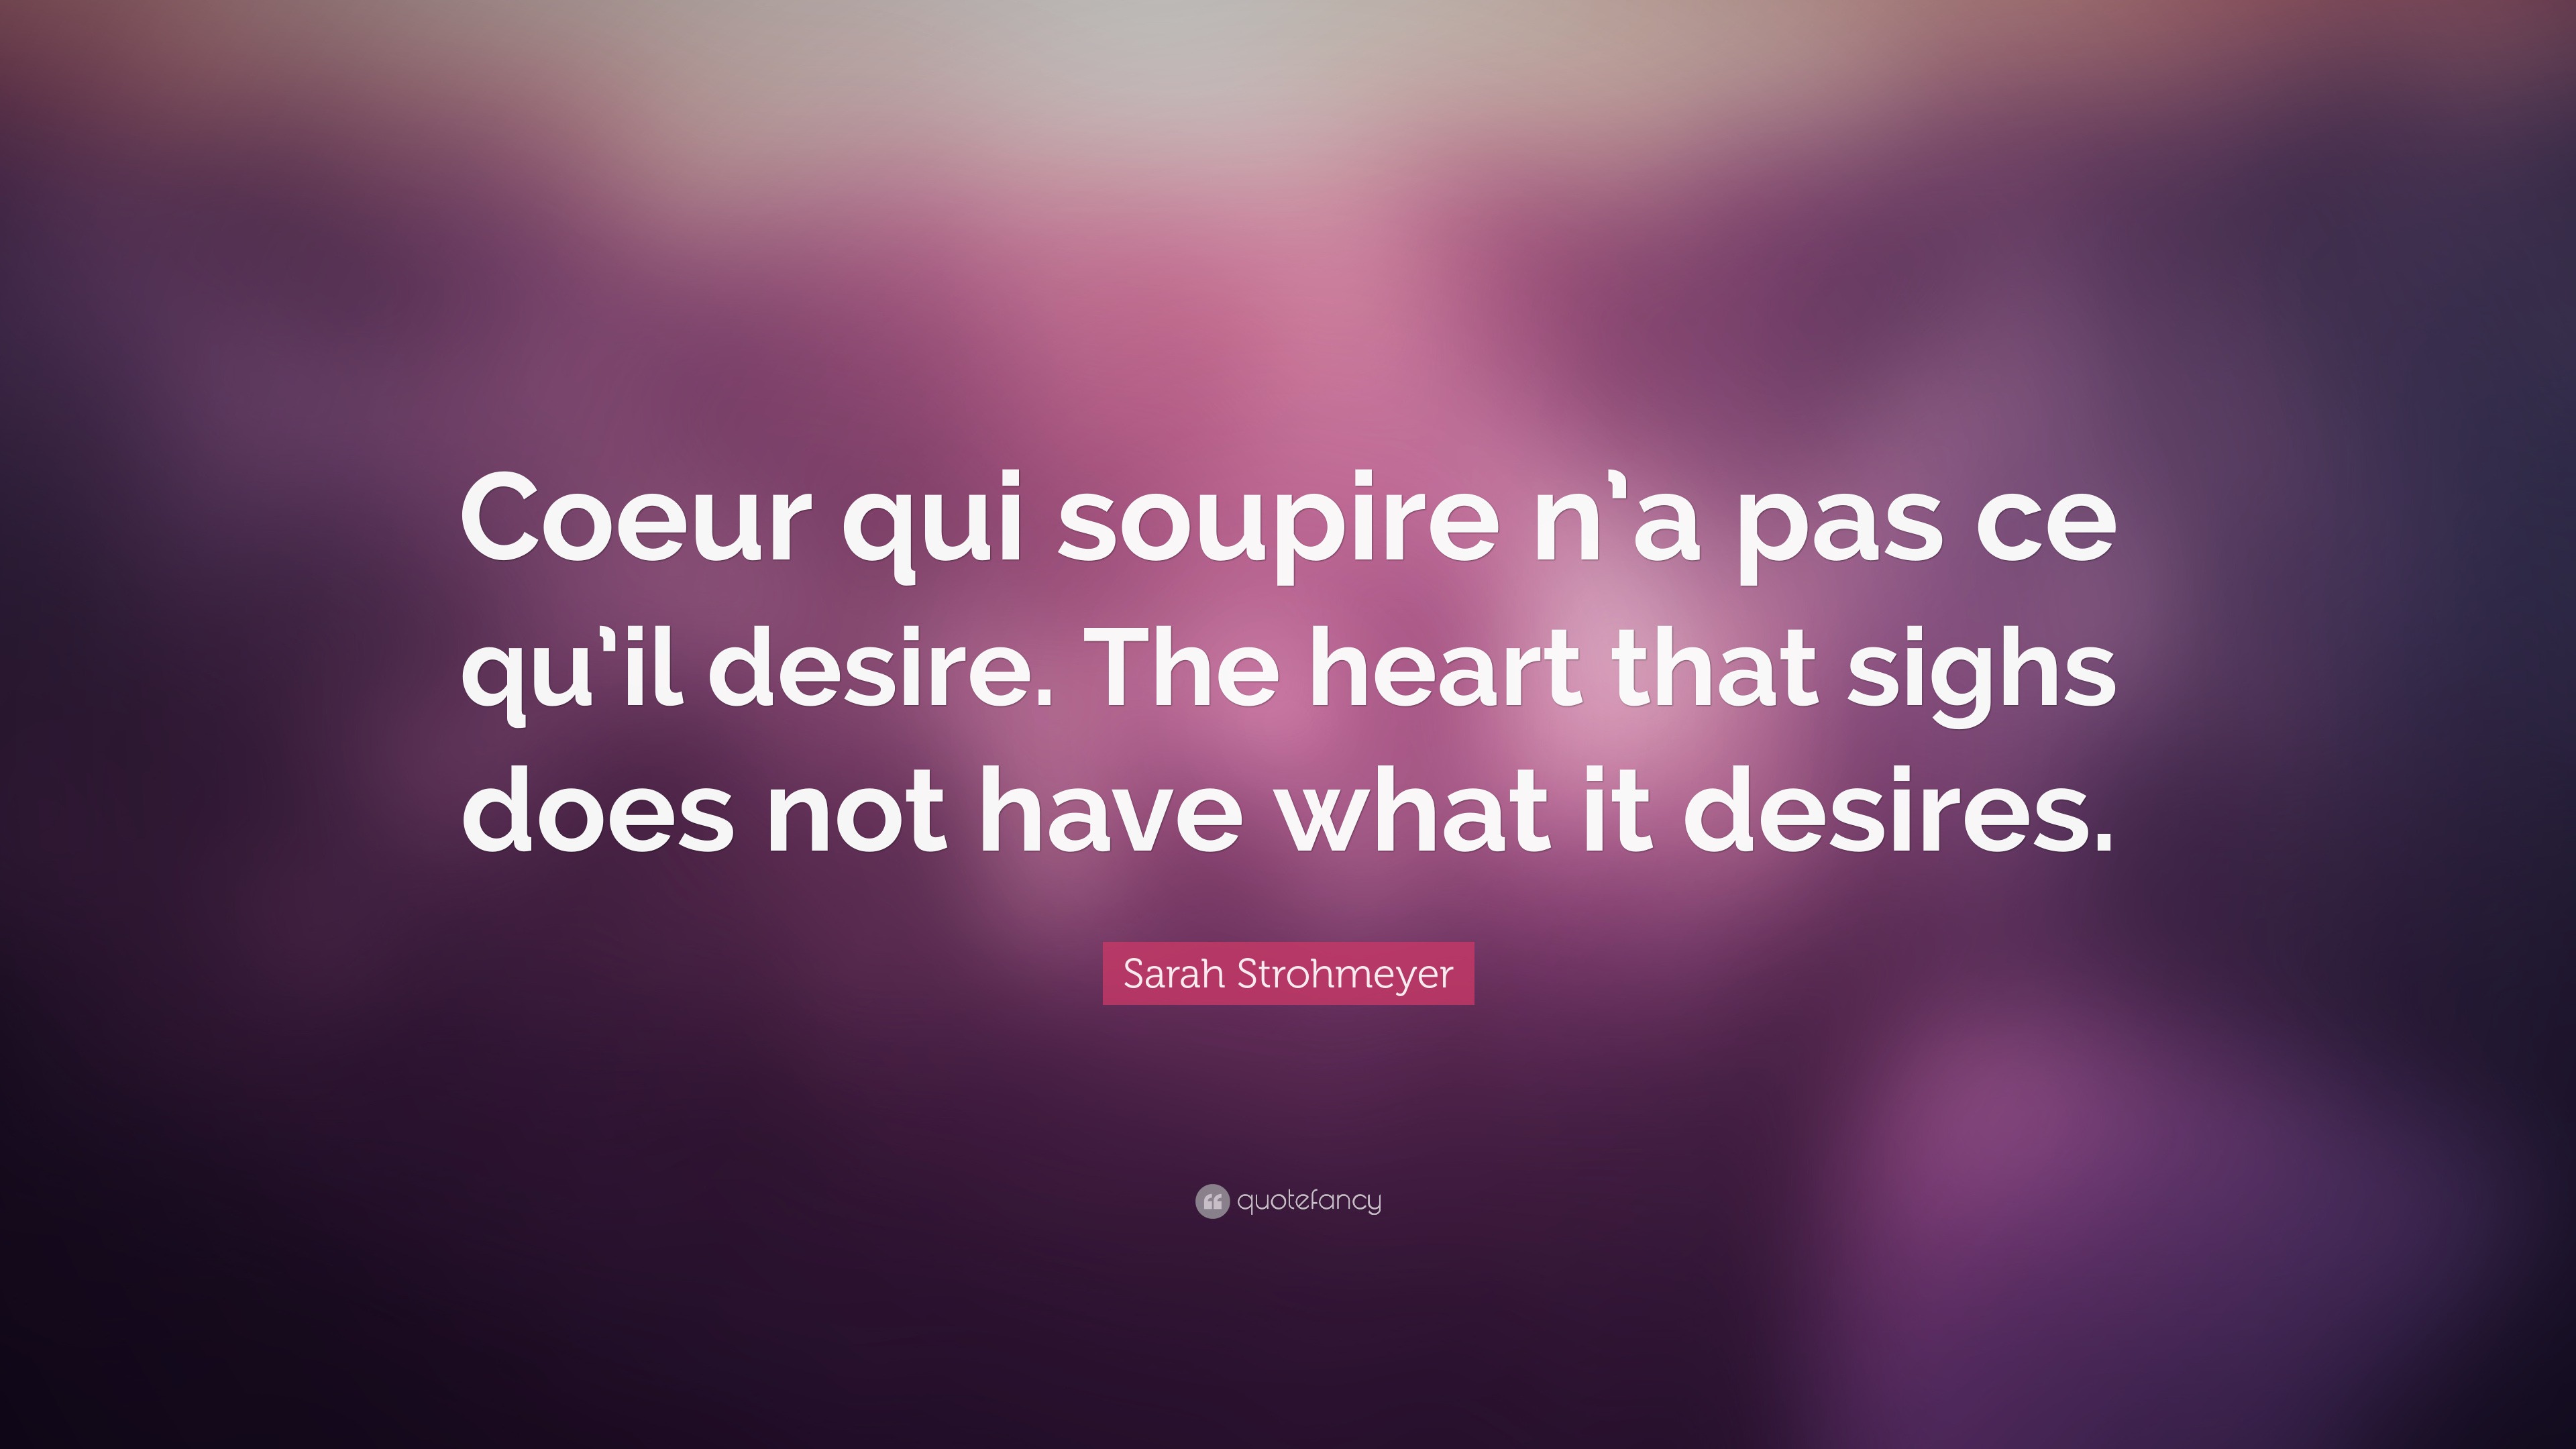 Sarah Strohmeyer Quote: “Coeur qui soupire n’a pas ce qu’il desire. The ...